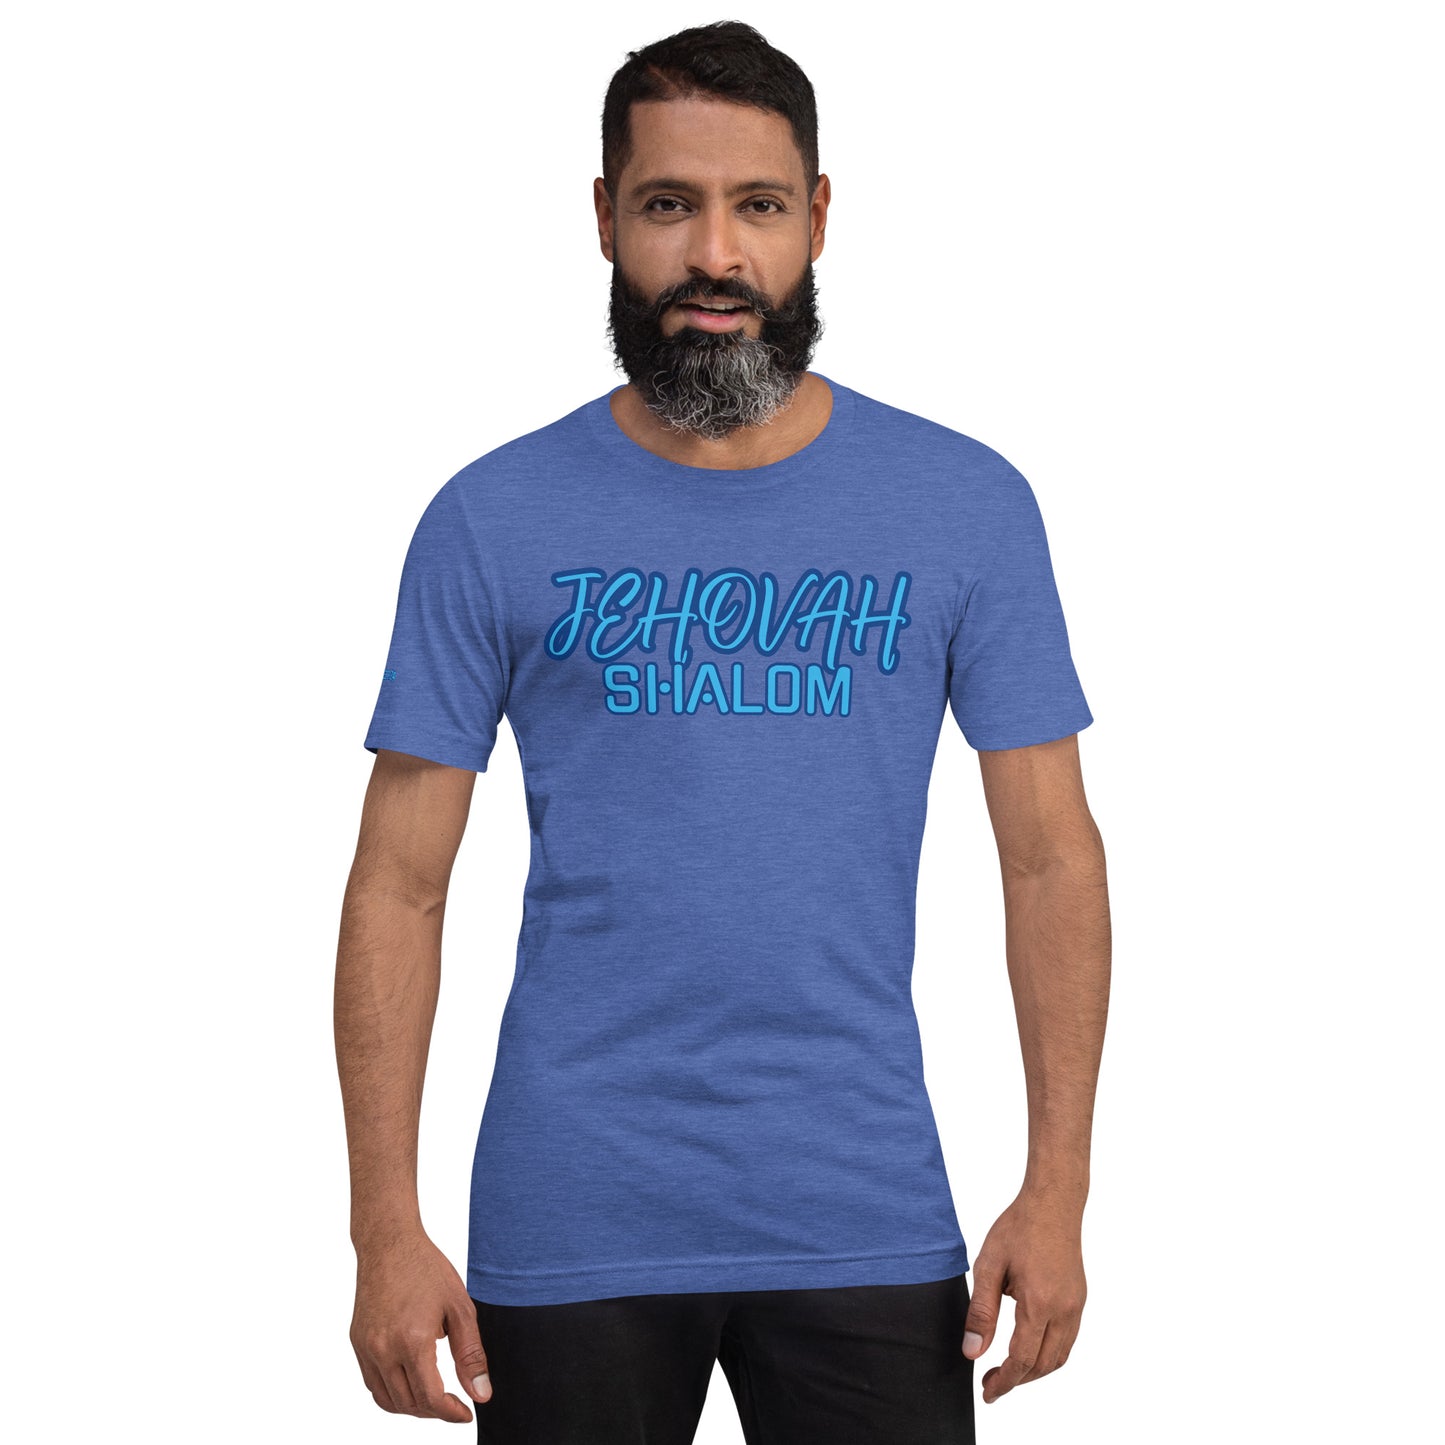 JEHOVAH SHALOM- Unisex t-shirt